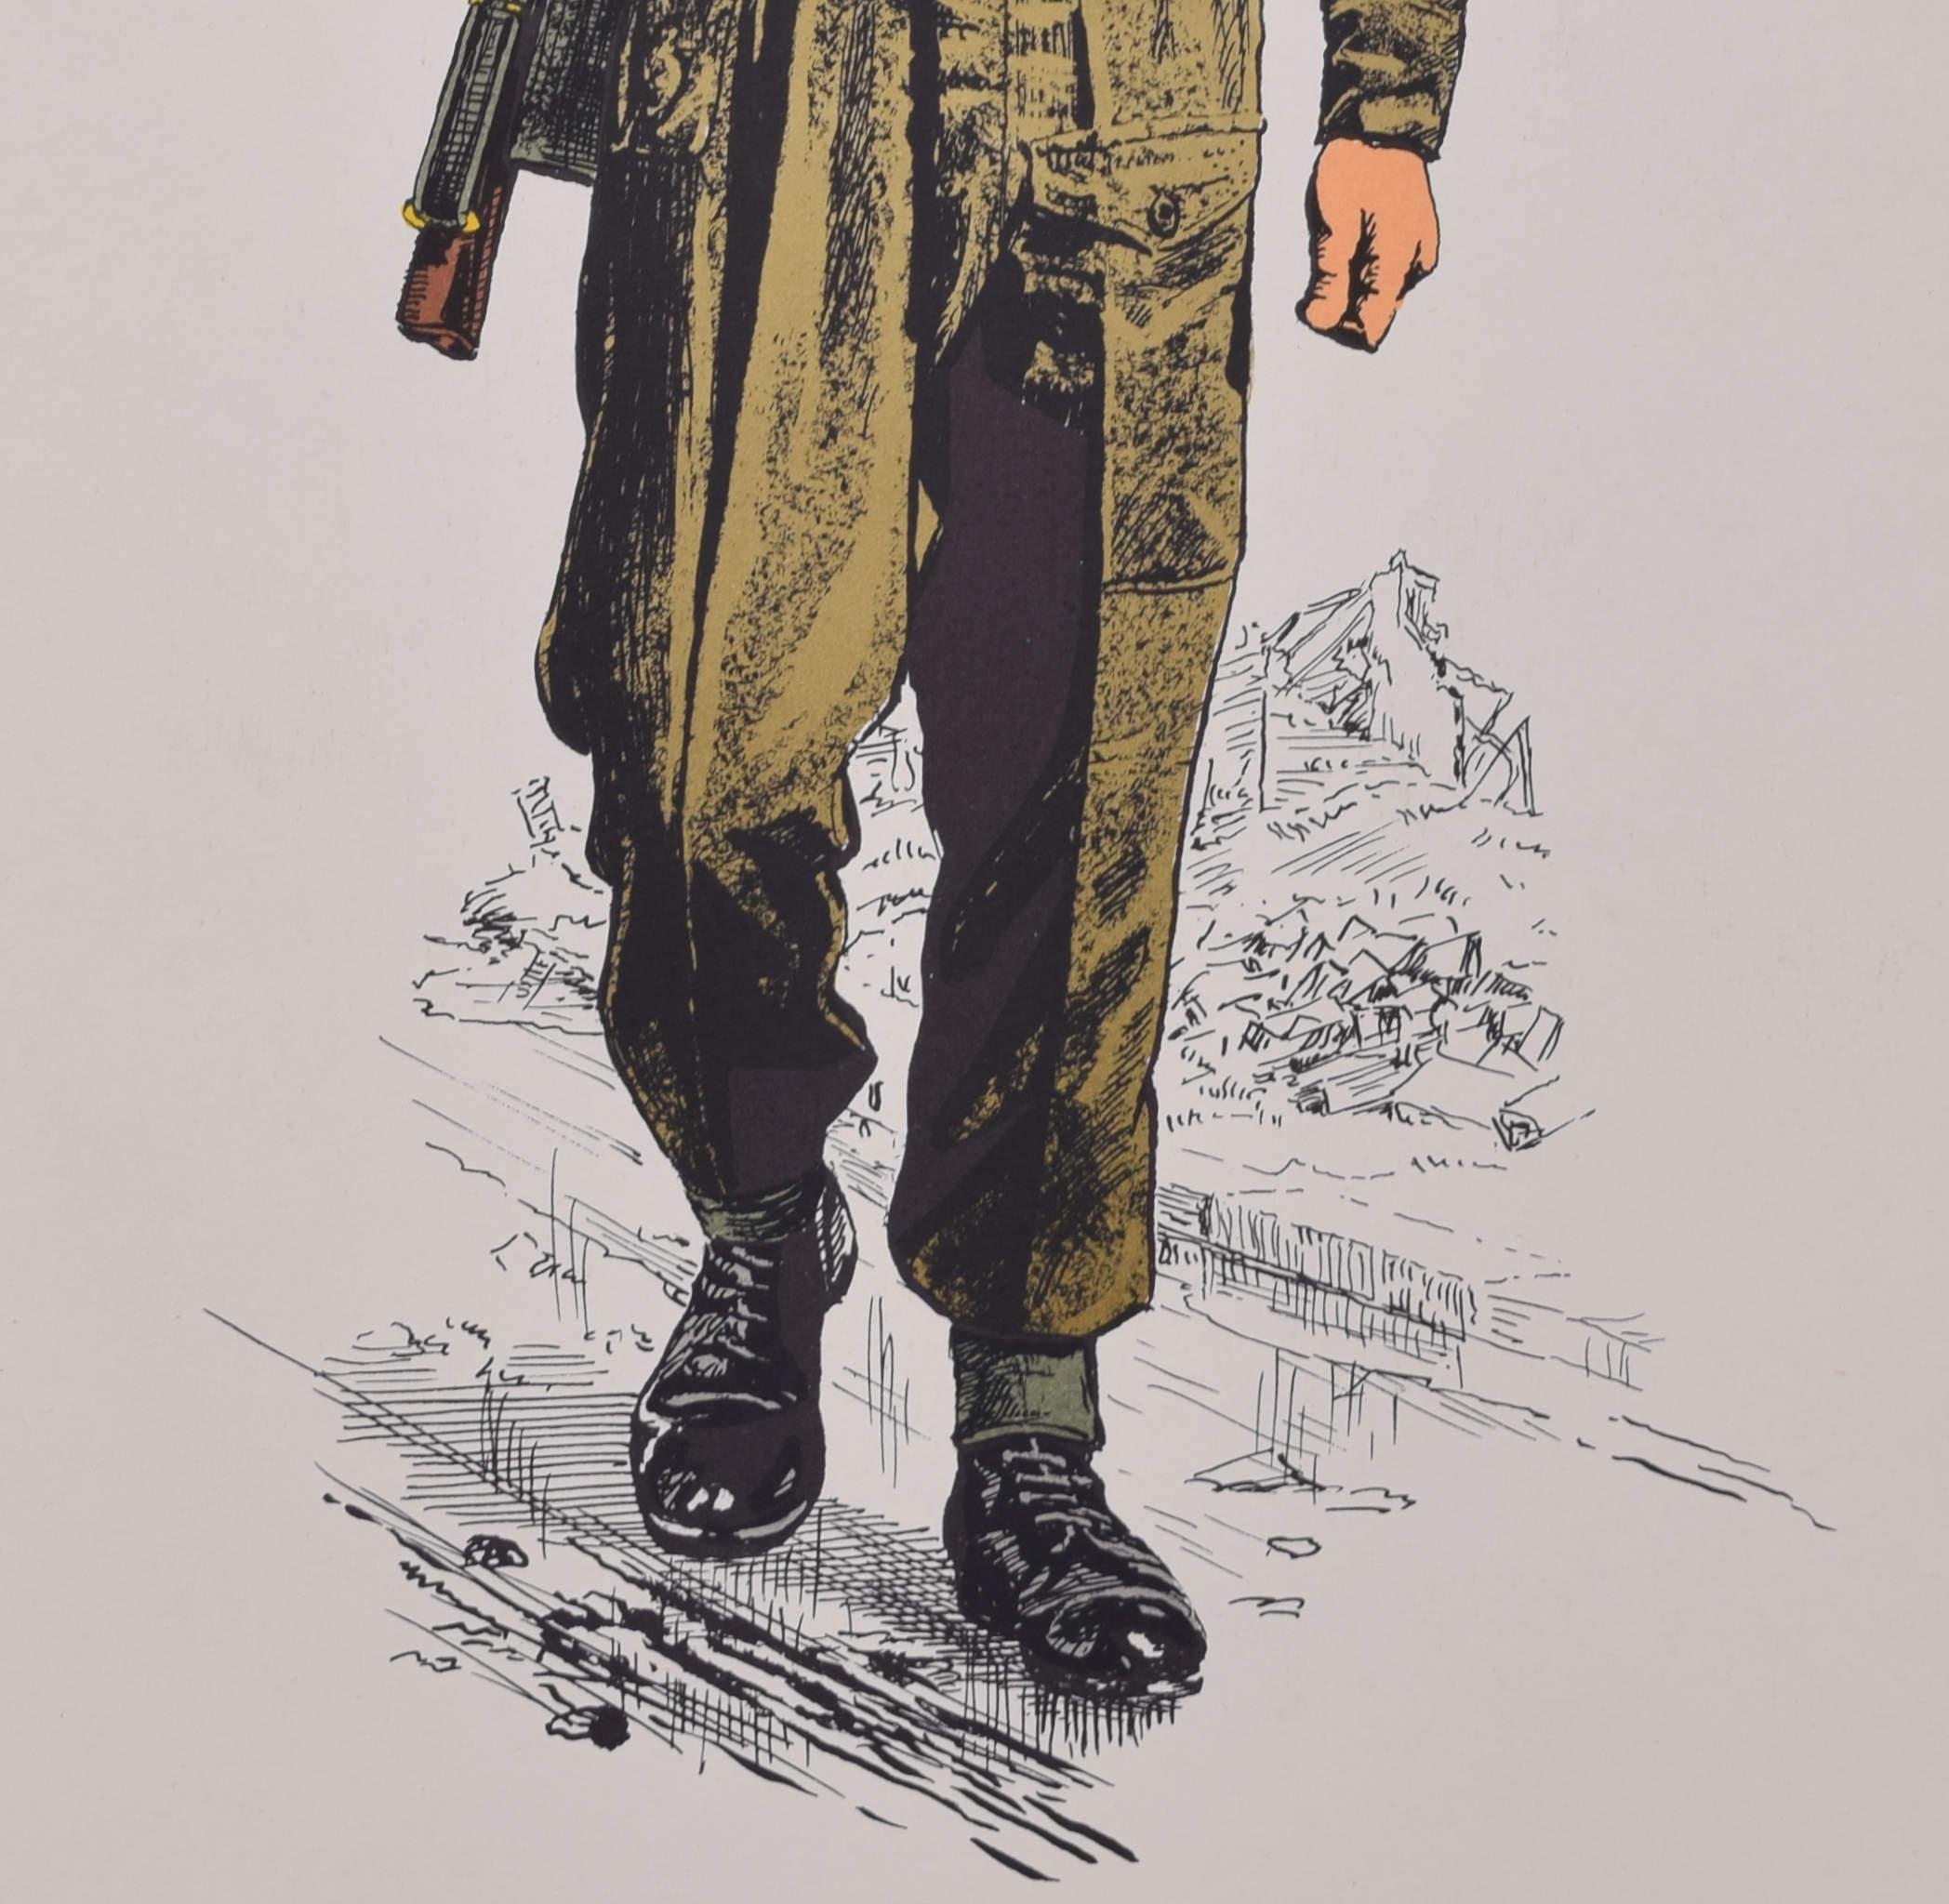 Infanterist 1939 - 1945 Uniform
Lithographie
50 x 31 cm

Produziert für das Institute of Army Education. Gedruckt für das HM Stationery Office von I A Limited, Southall 51.

Diese Plakate wurden vom Institut für Armeeerziehung hergestellt,